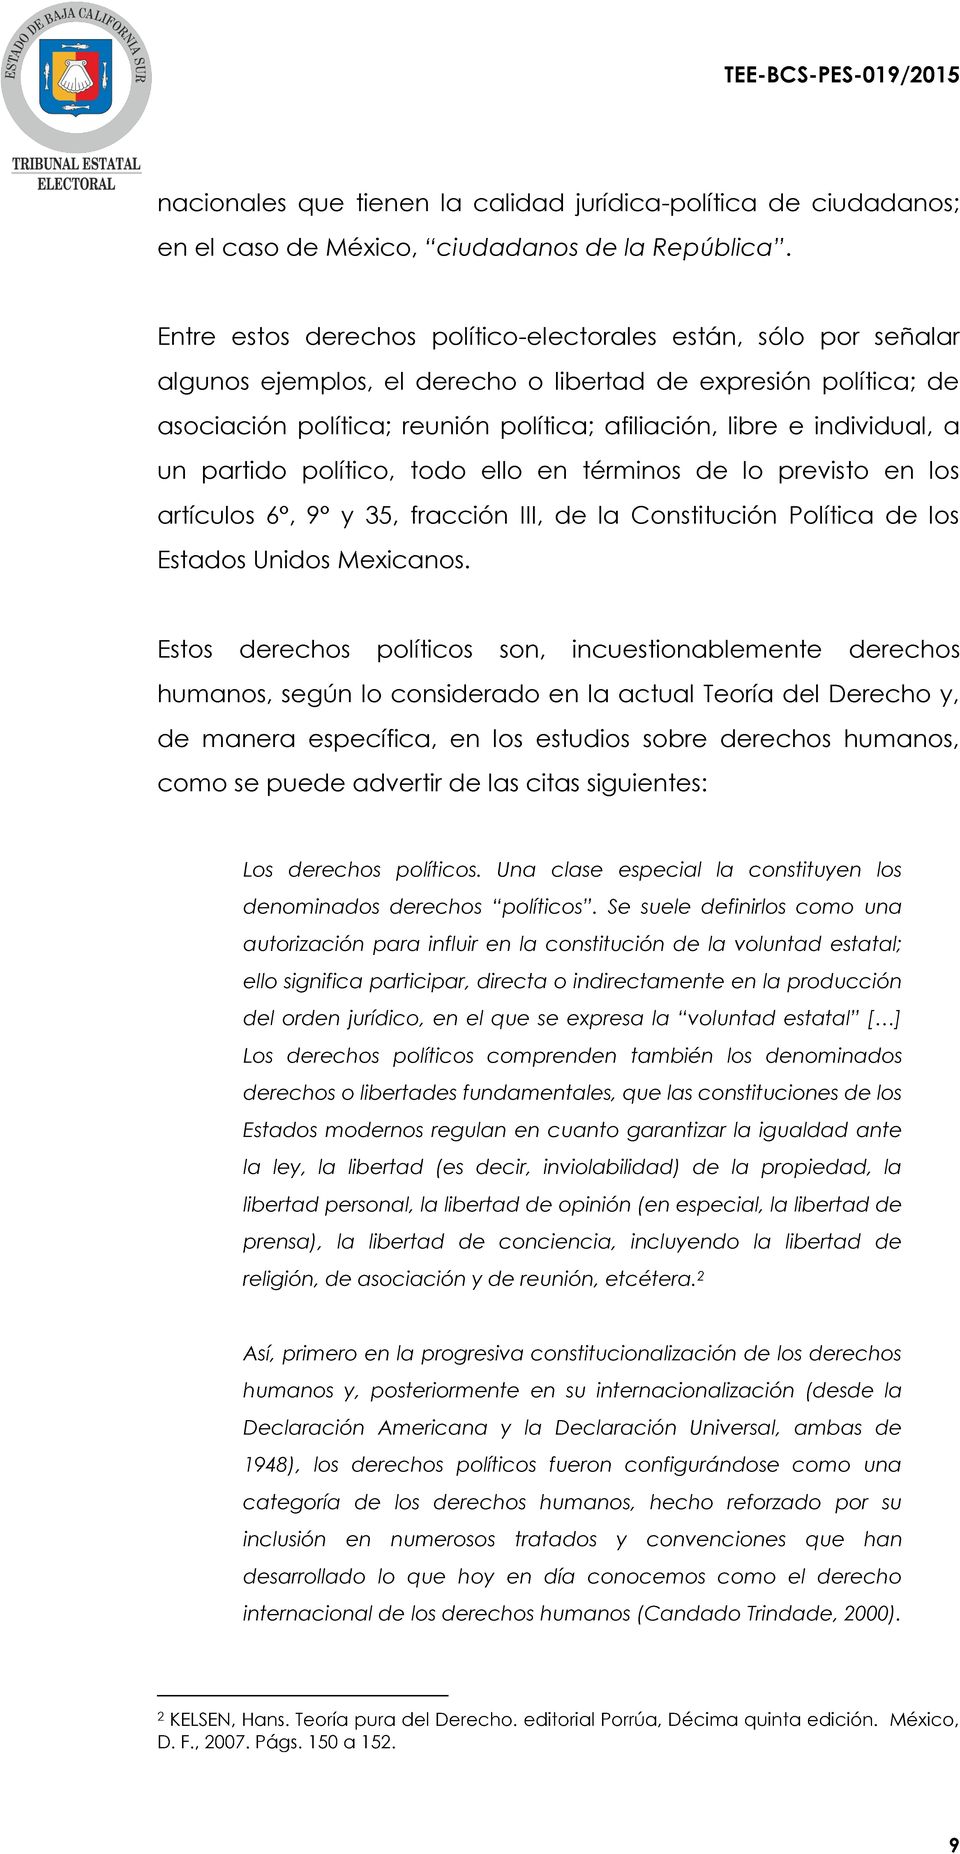 individual, a un partido político, todo ello en términos de lo previsto en los artículos 6, 9 y 35, fracción III, de la Constitución Política de los Estados Unidos Mexicanos.